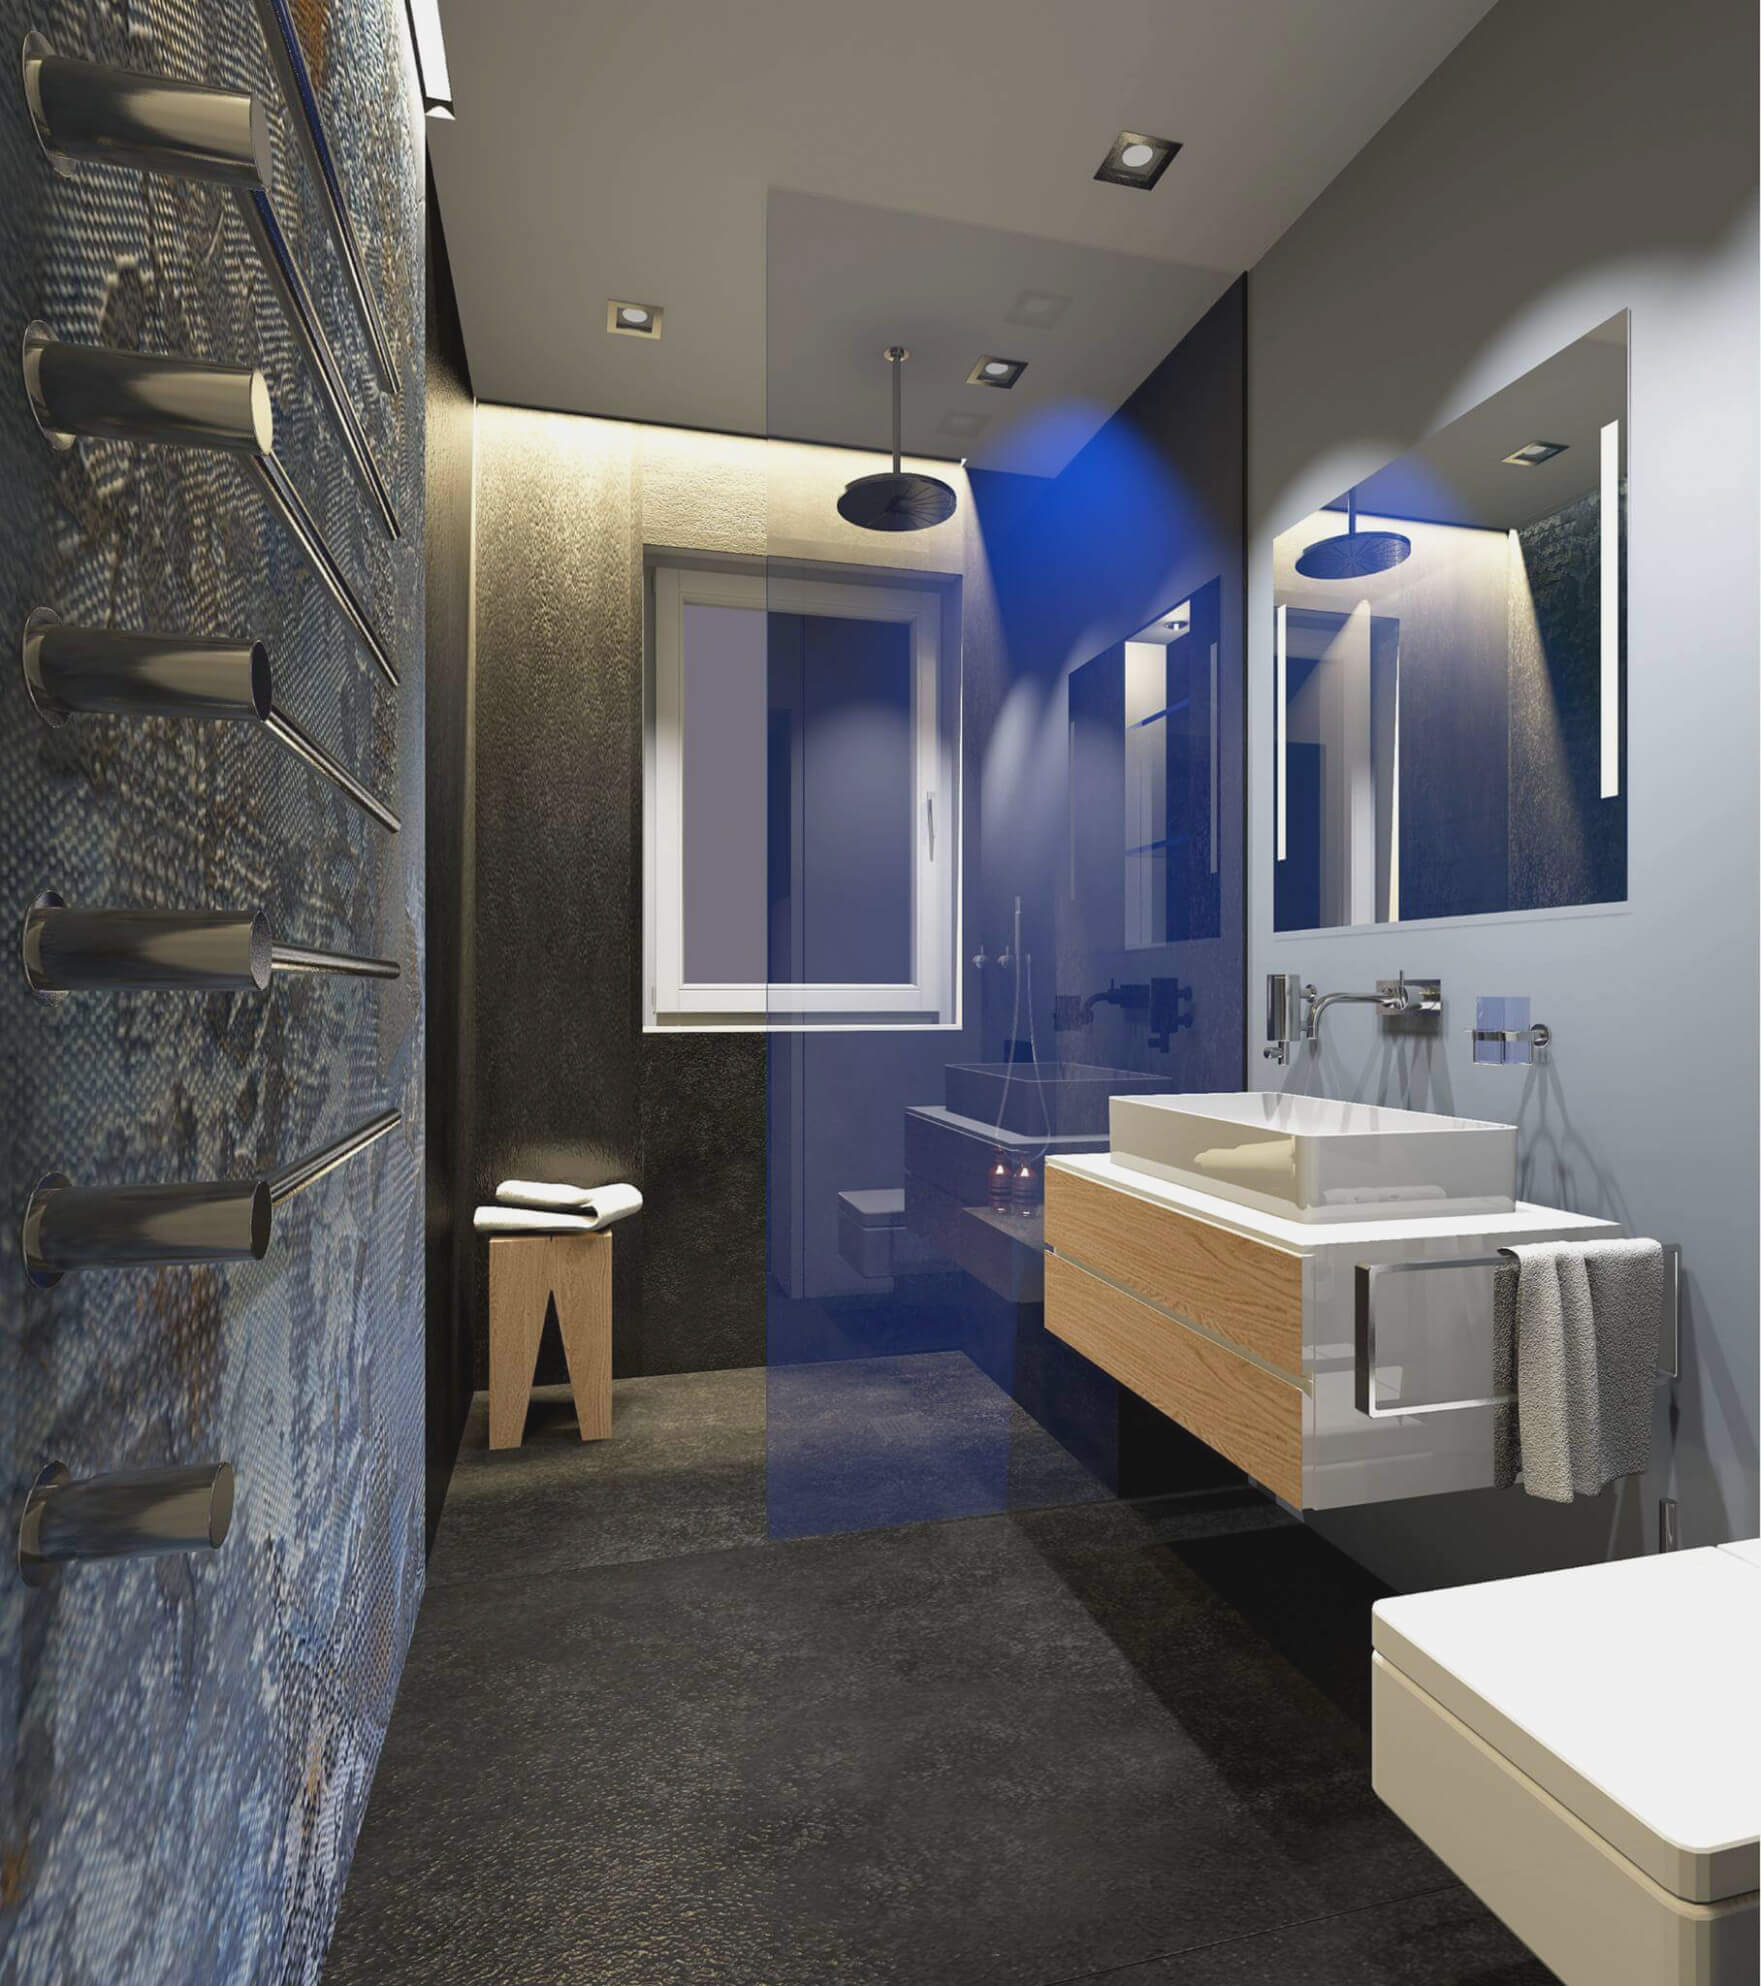 Der Boden und die Wand bilden eine optische Einheit, die den Raum erfasst unda damit das Badezimmer vergrößert